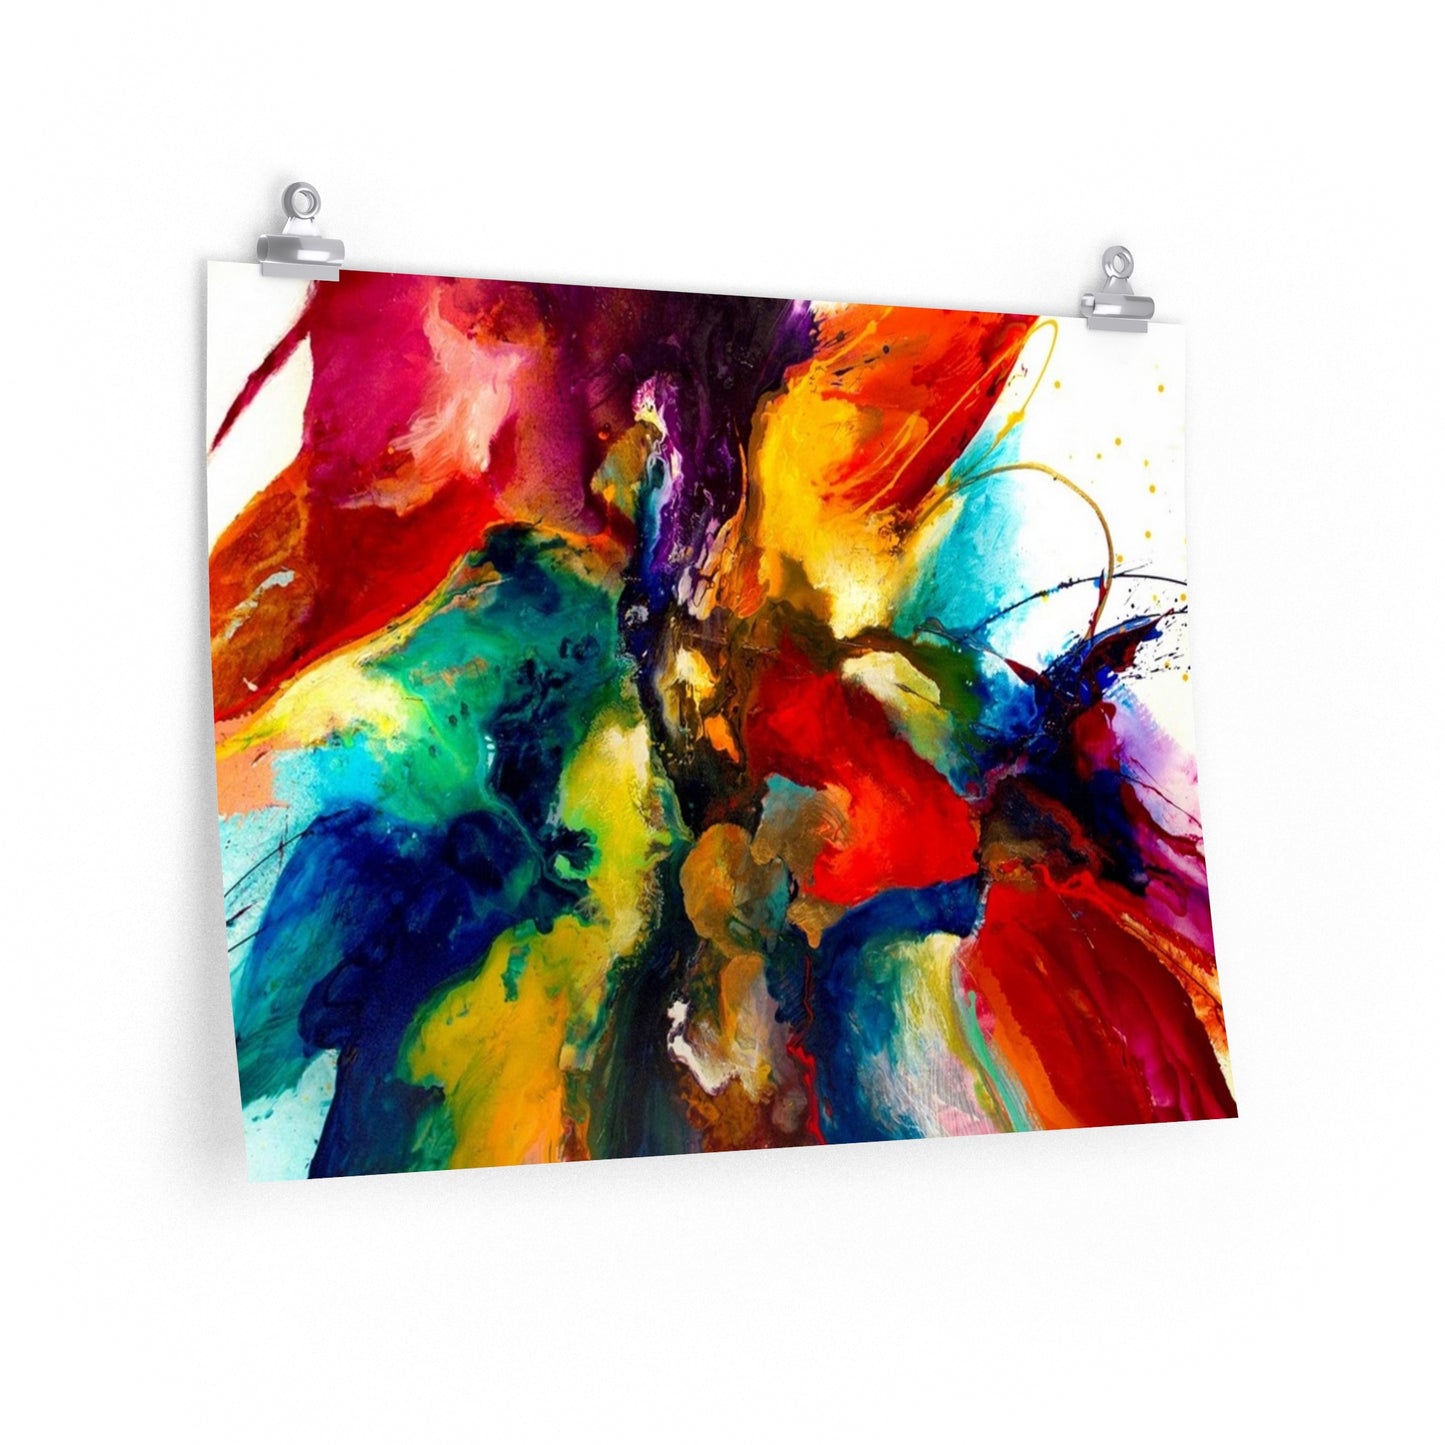 Modern splash of color art* Premium Matte horizontal posters decor gift fine art bestseller